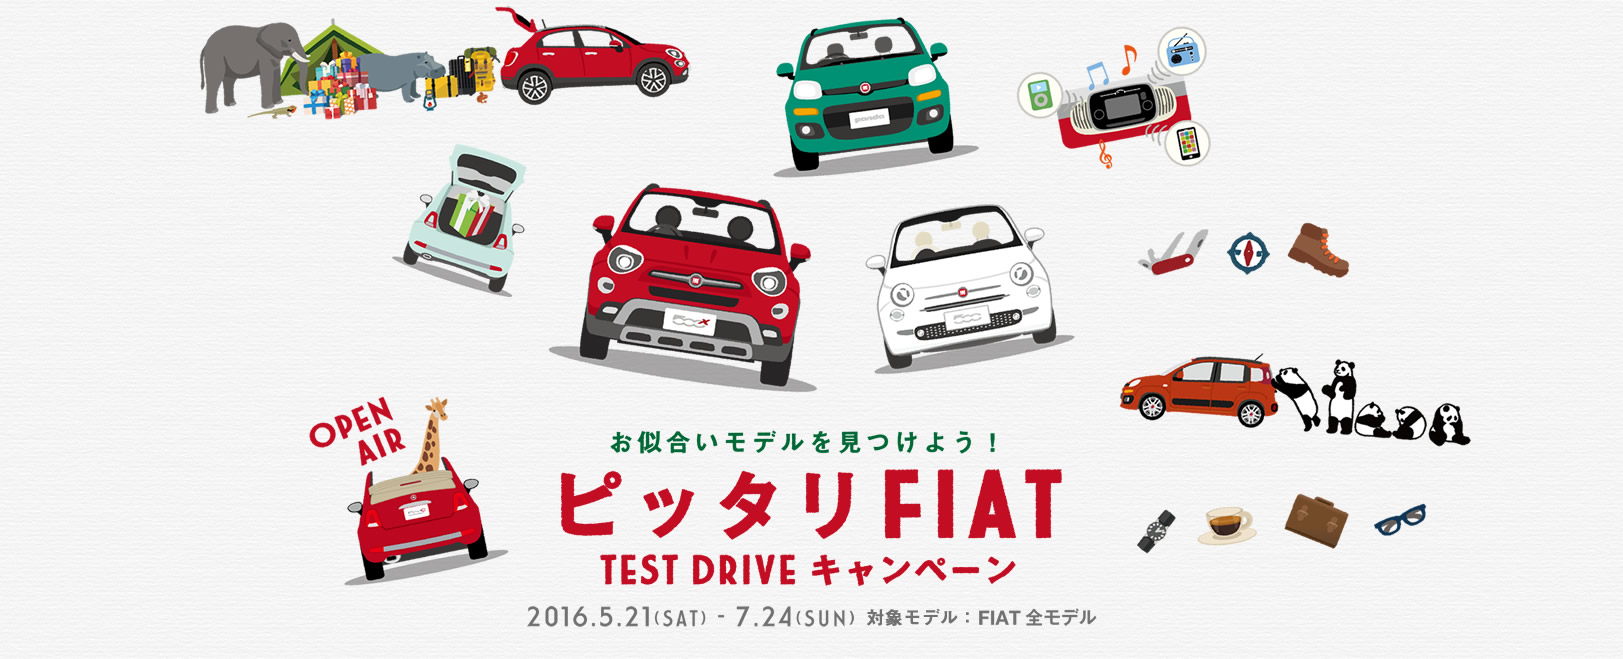 フィアット広島 ピッタリFIAT TEST DRIVE キャンペーン